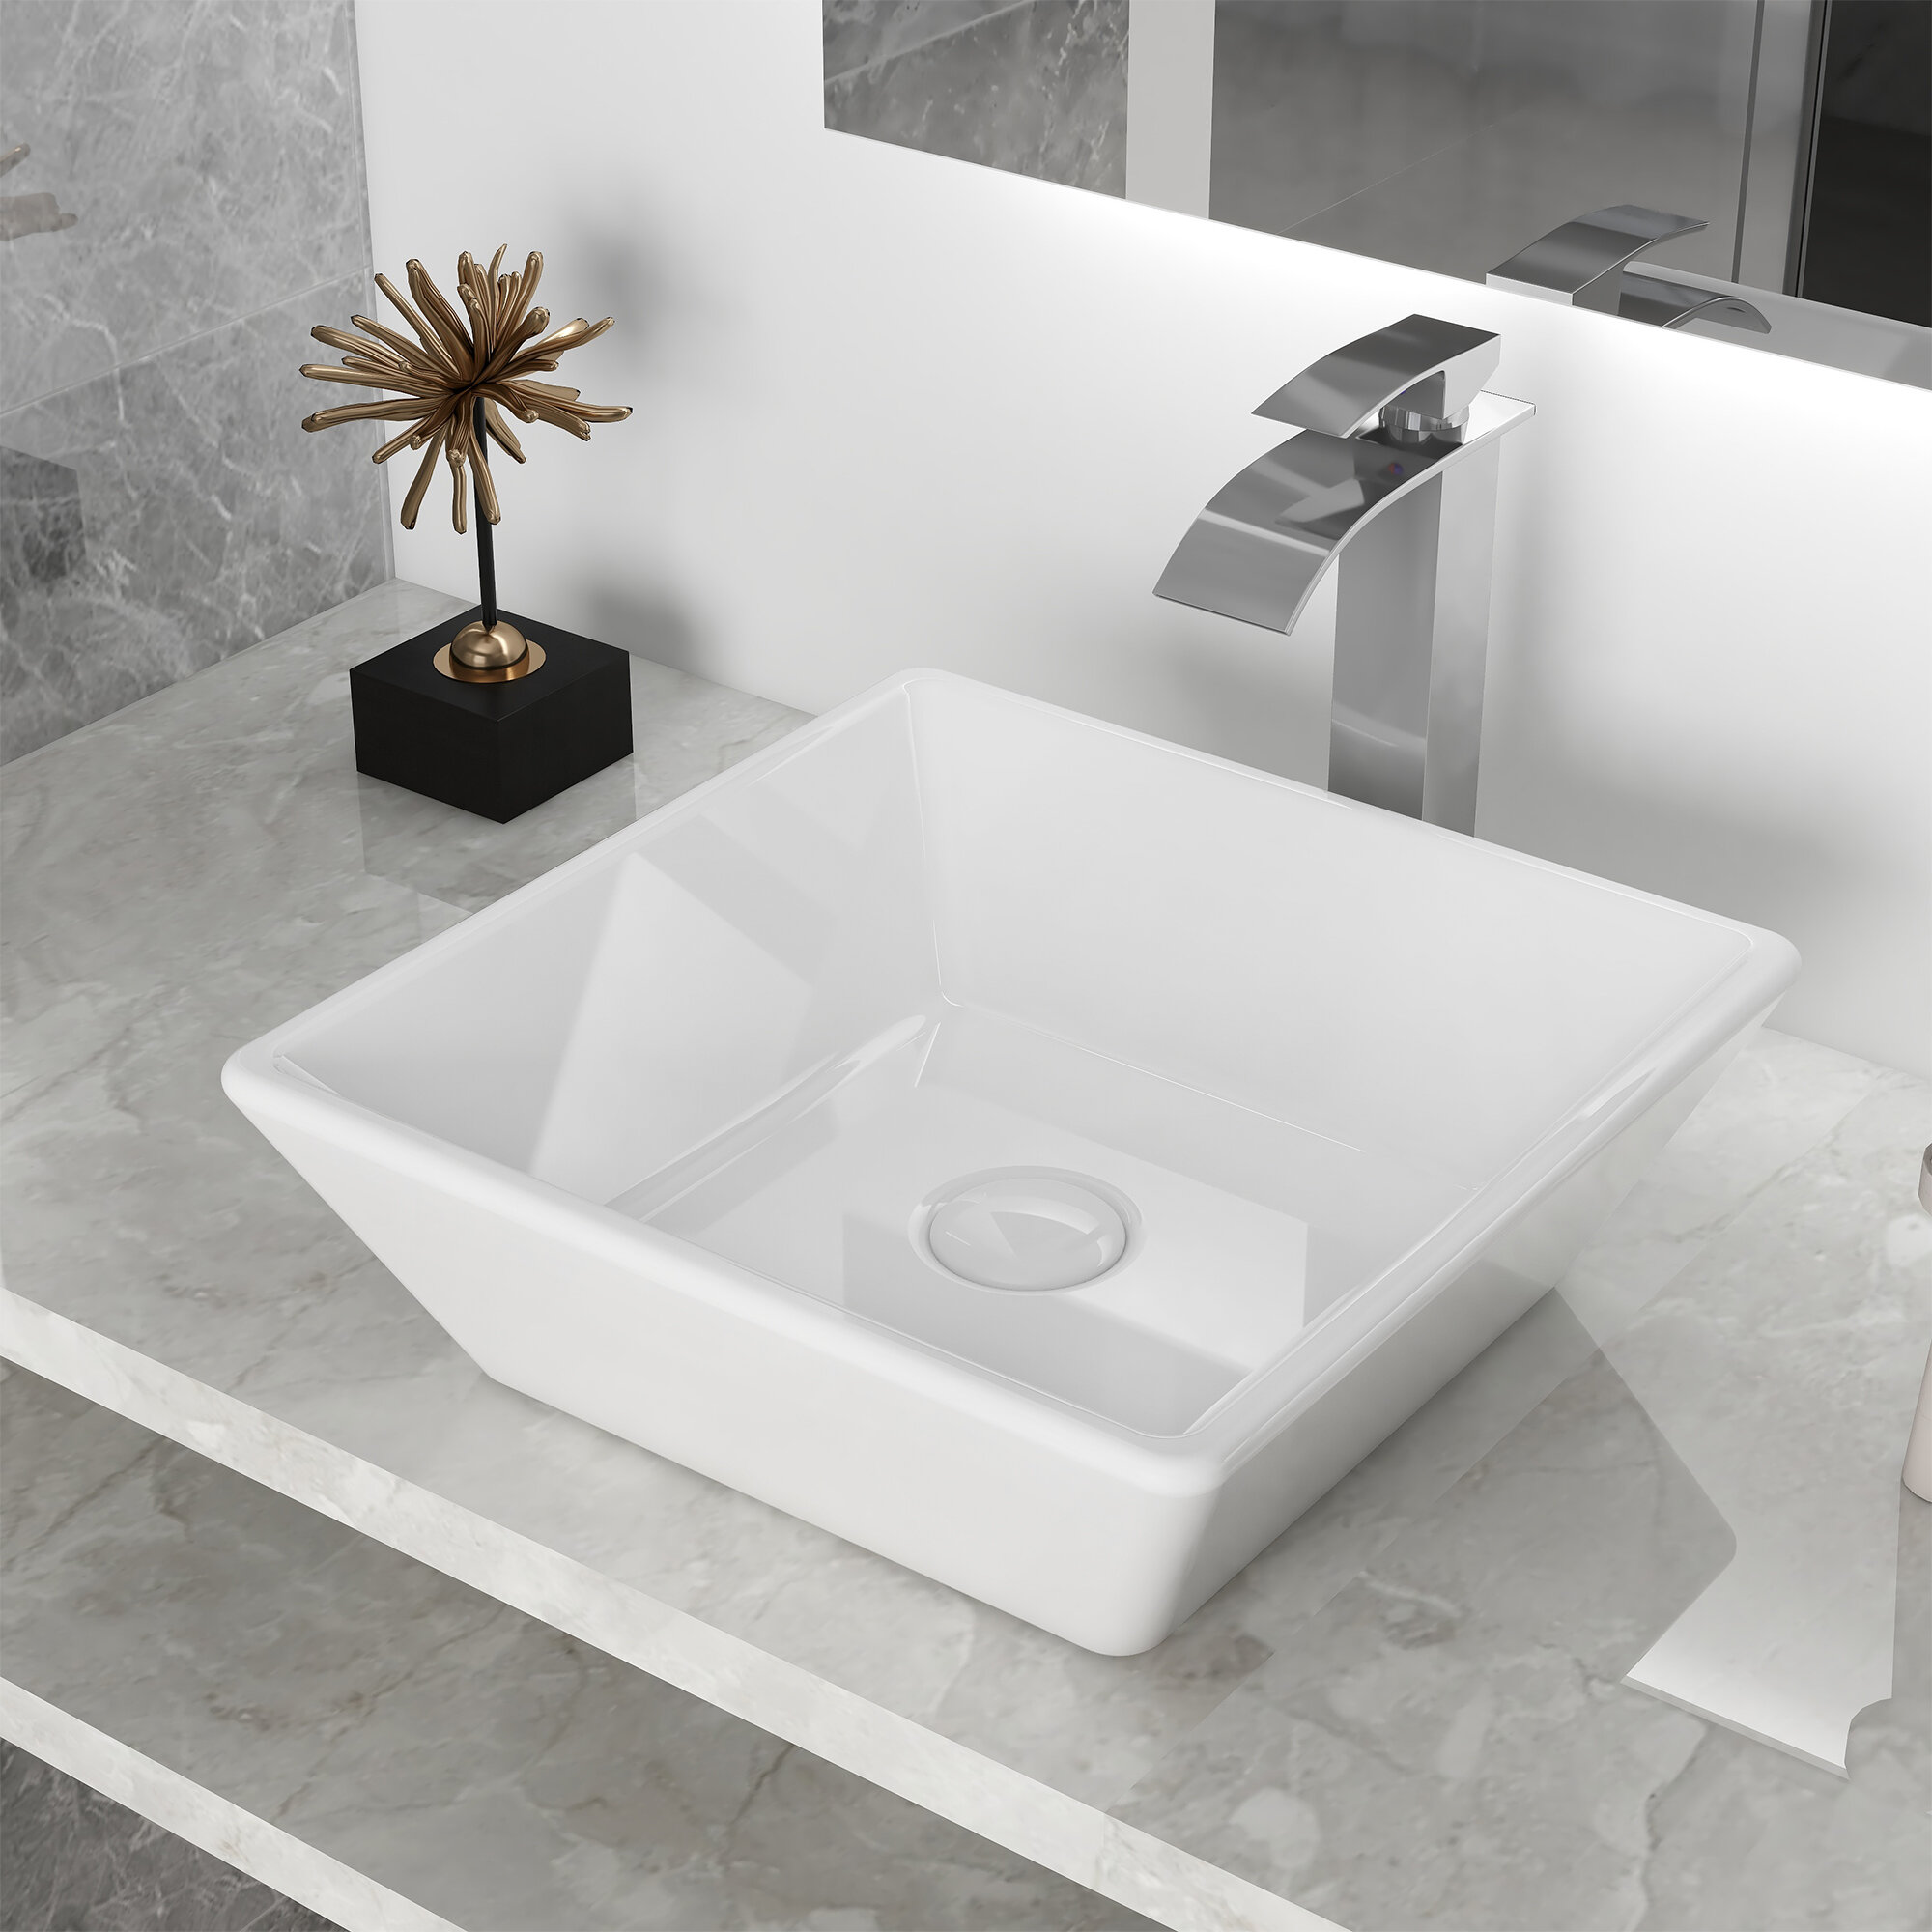 Deervalley White Ceramic Handmade Square Vessel Bathroom Sink Reviews Wayfair